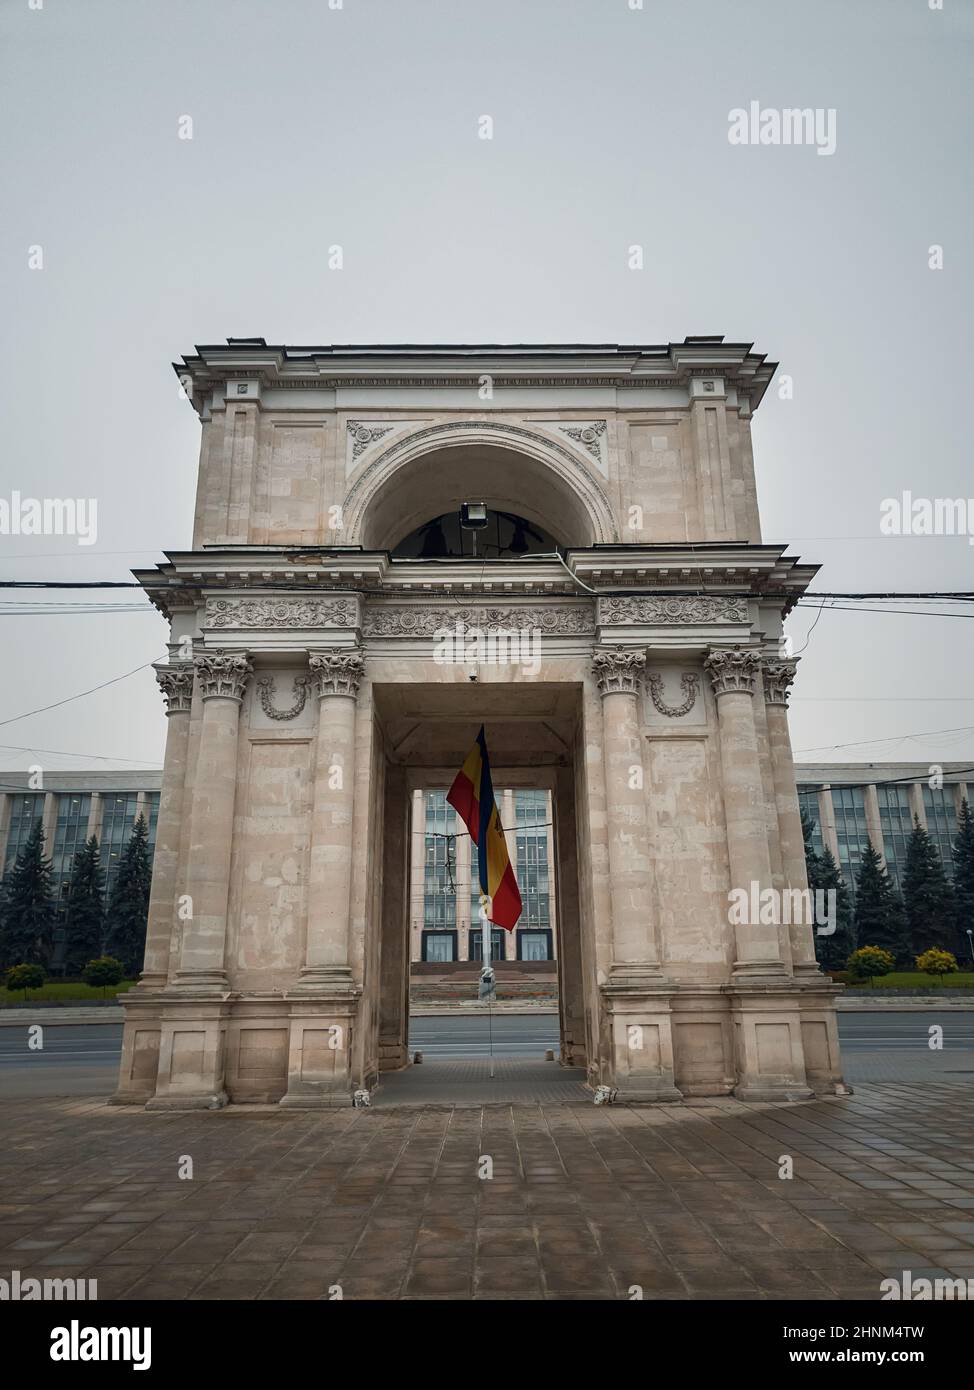 Vue rapprochée de l'arche du Triumphal devant le bâtiment du gouvernement, Chisinau, Moldova.Monuments historiques de la capitale Banque D'Images